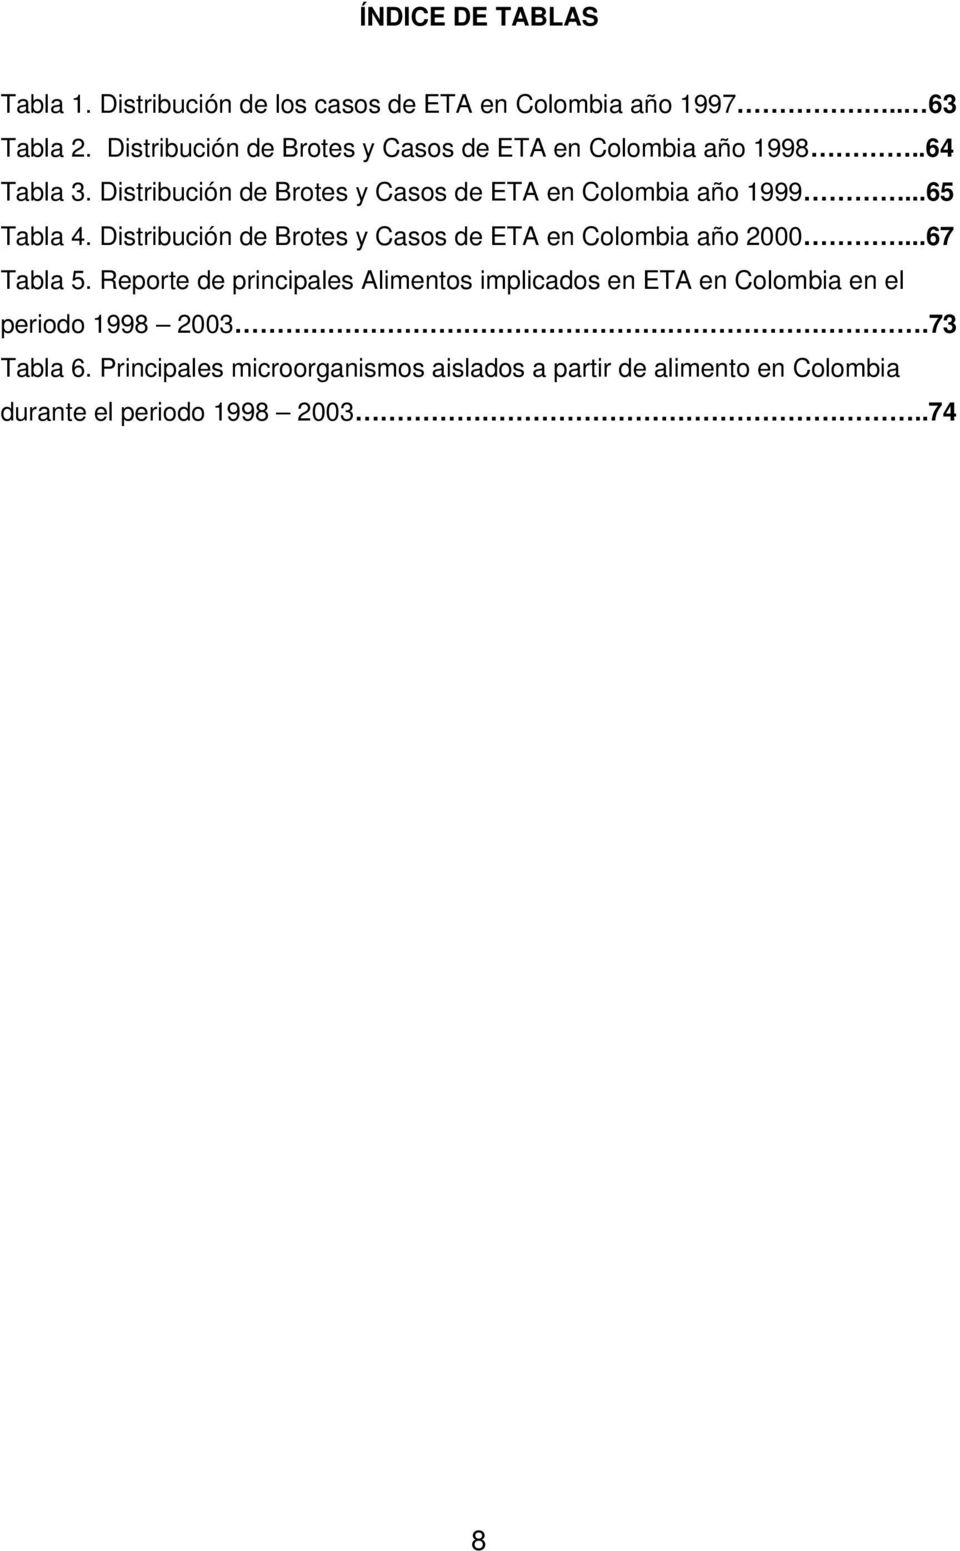 Distribución de Brotes y Casos de ETA en Colombia año 1999...65 Tabla 4.